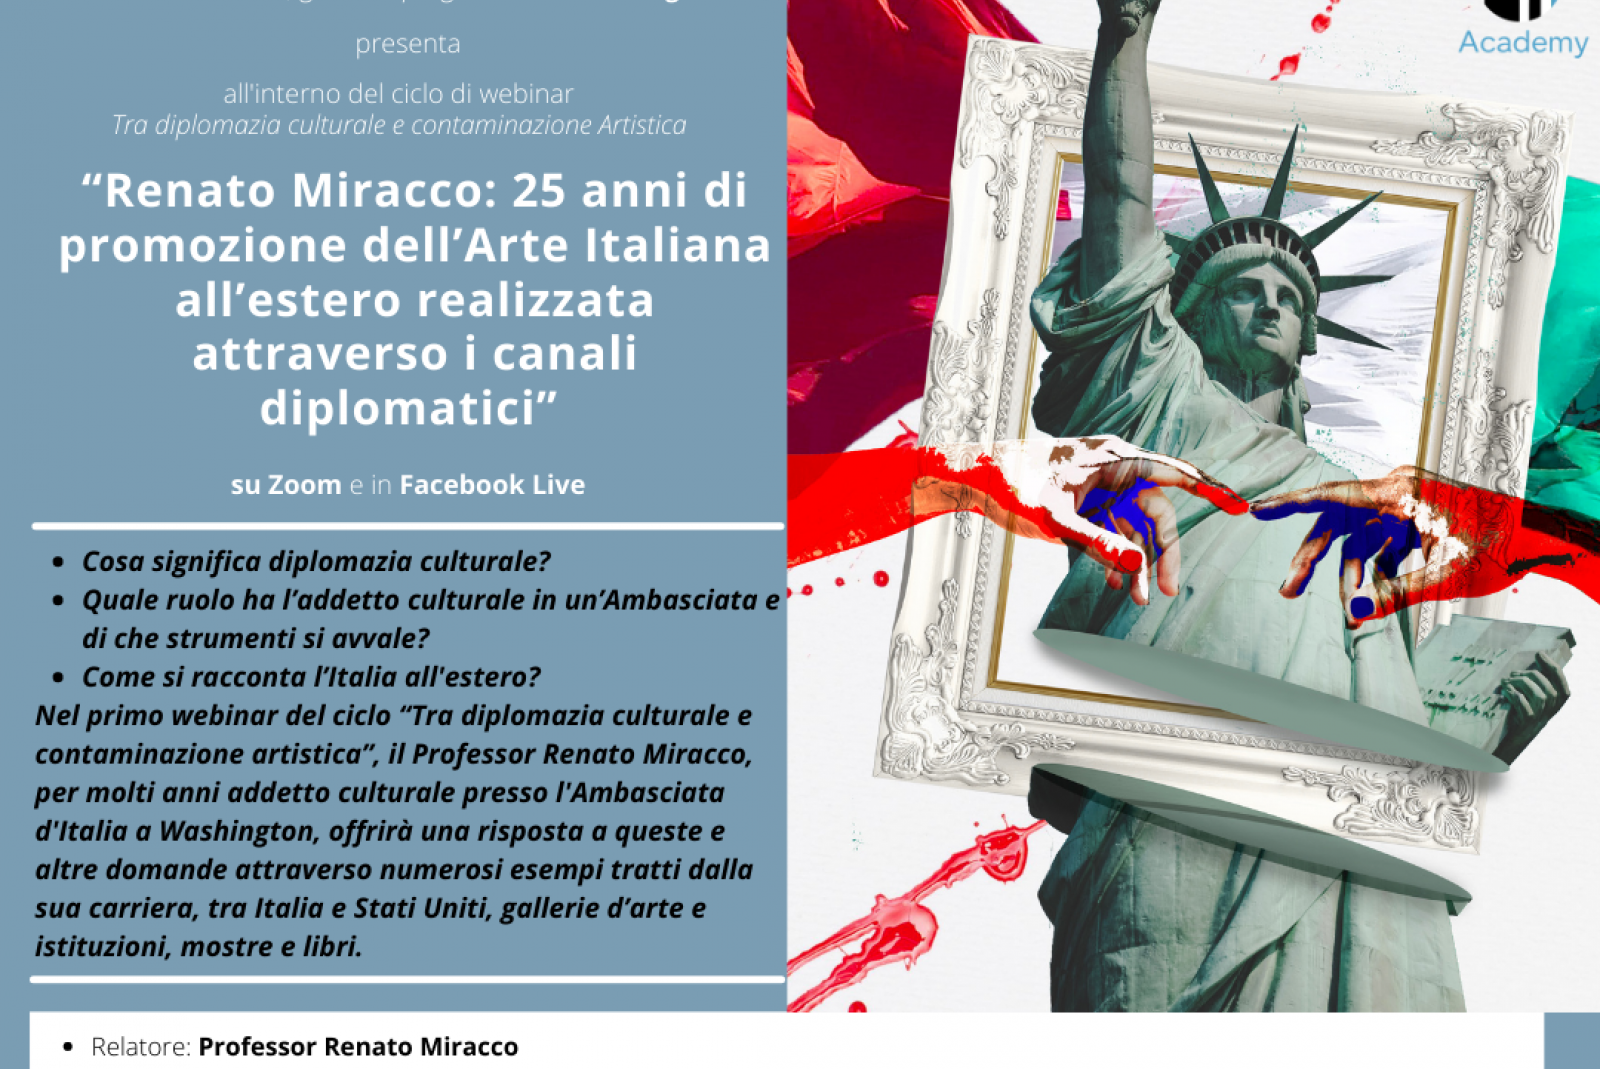 Renato Miracco: 25 anni di promozione dell’Arte Italiana all’estero realizzata attraverso i canali diplomatici.